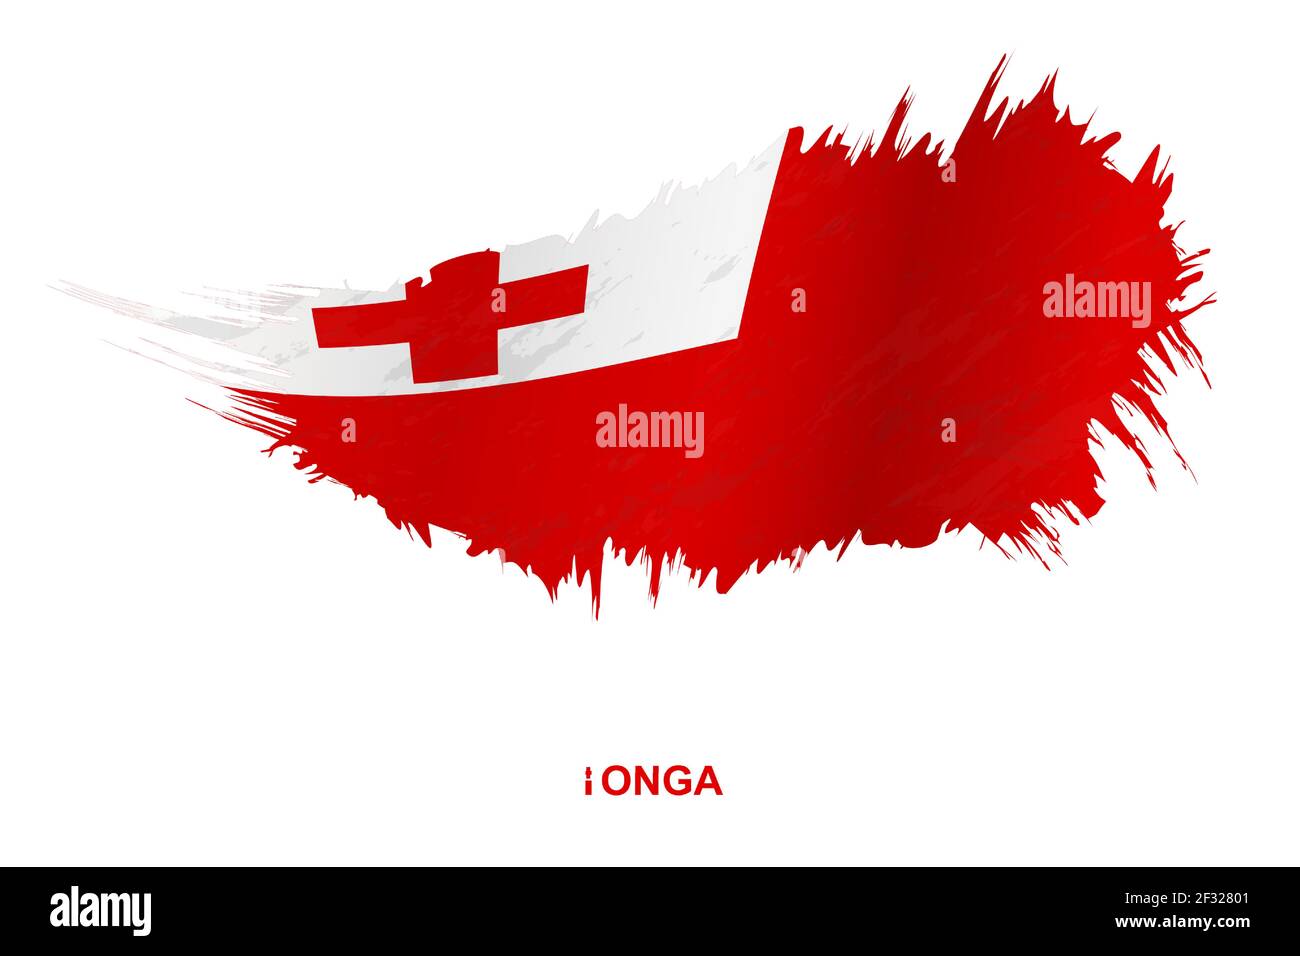 Flagge von Tonga im Grunge-Stil mit wehenden Effekt, Vektor Grunge Pinselstrich Flagge. Stock Vektor